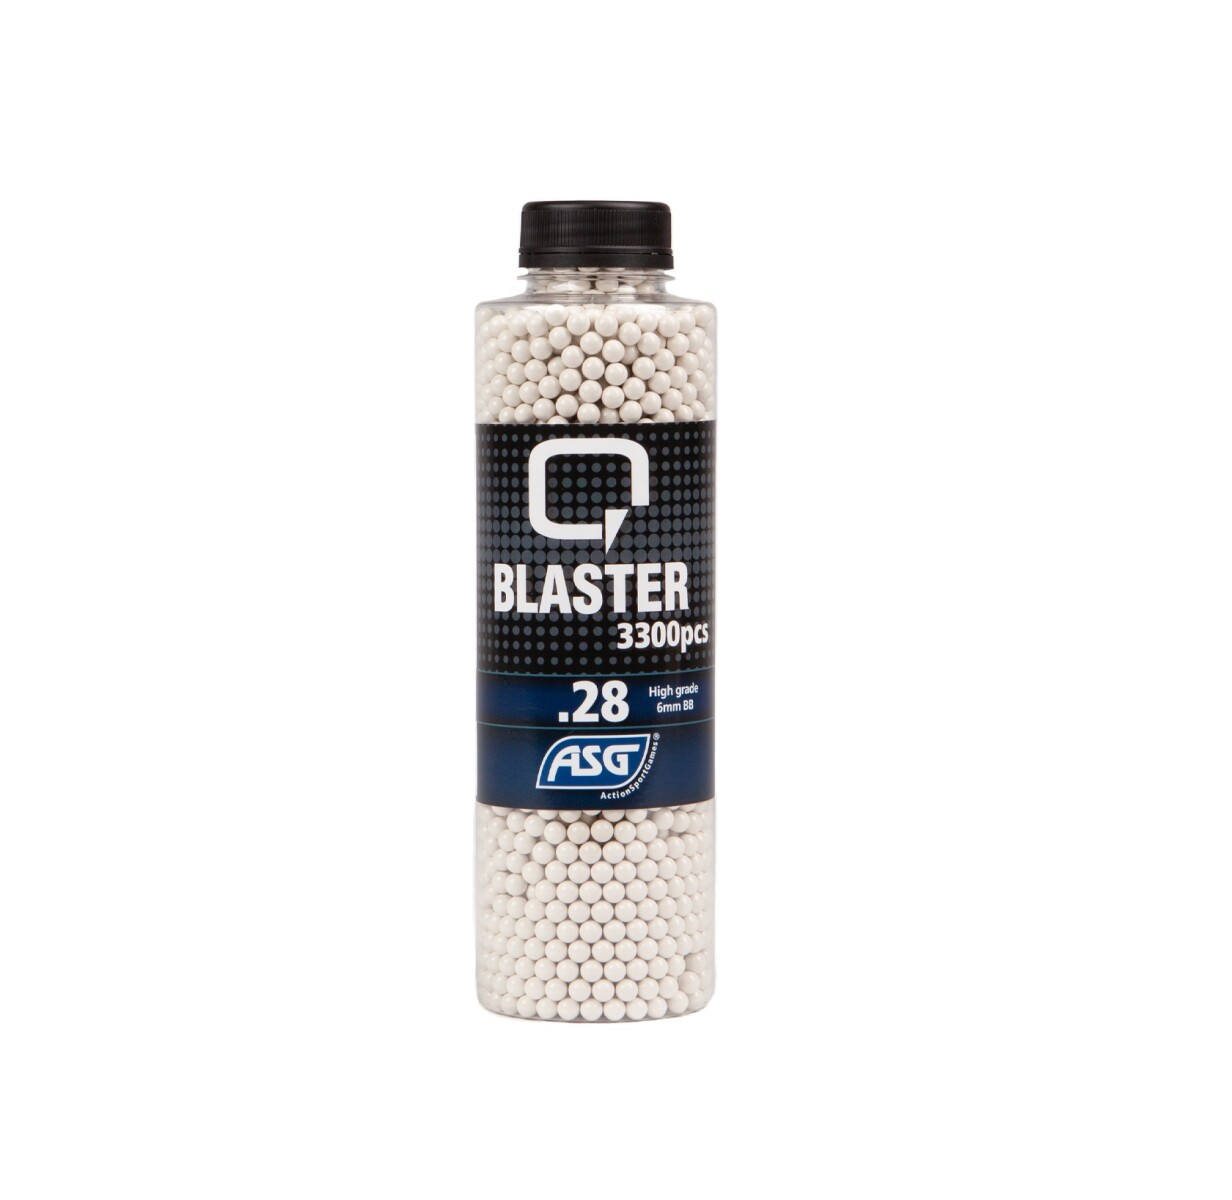 Bbs Q Blaster 0.28g Botella 3300 pcs - ASG 